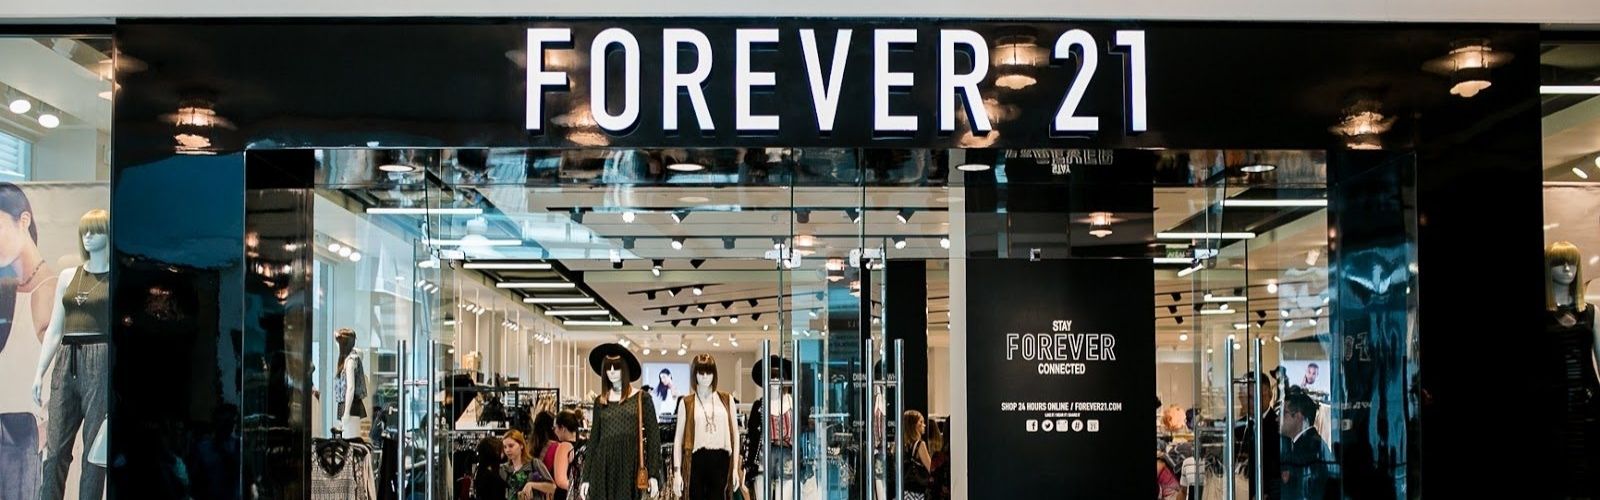 Forever 21 põe roupas em promoção e deve fechar lojas em todo